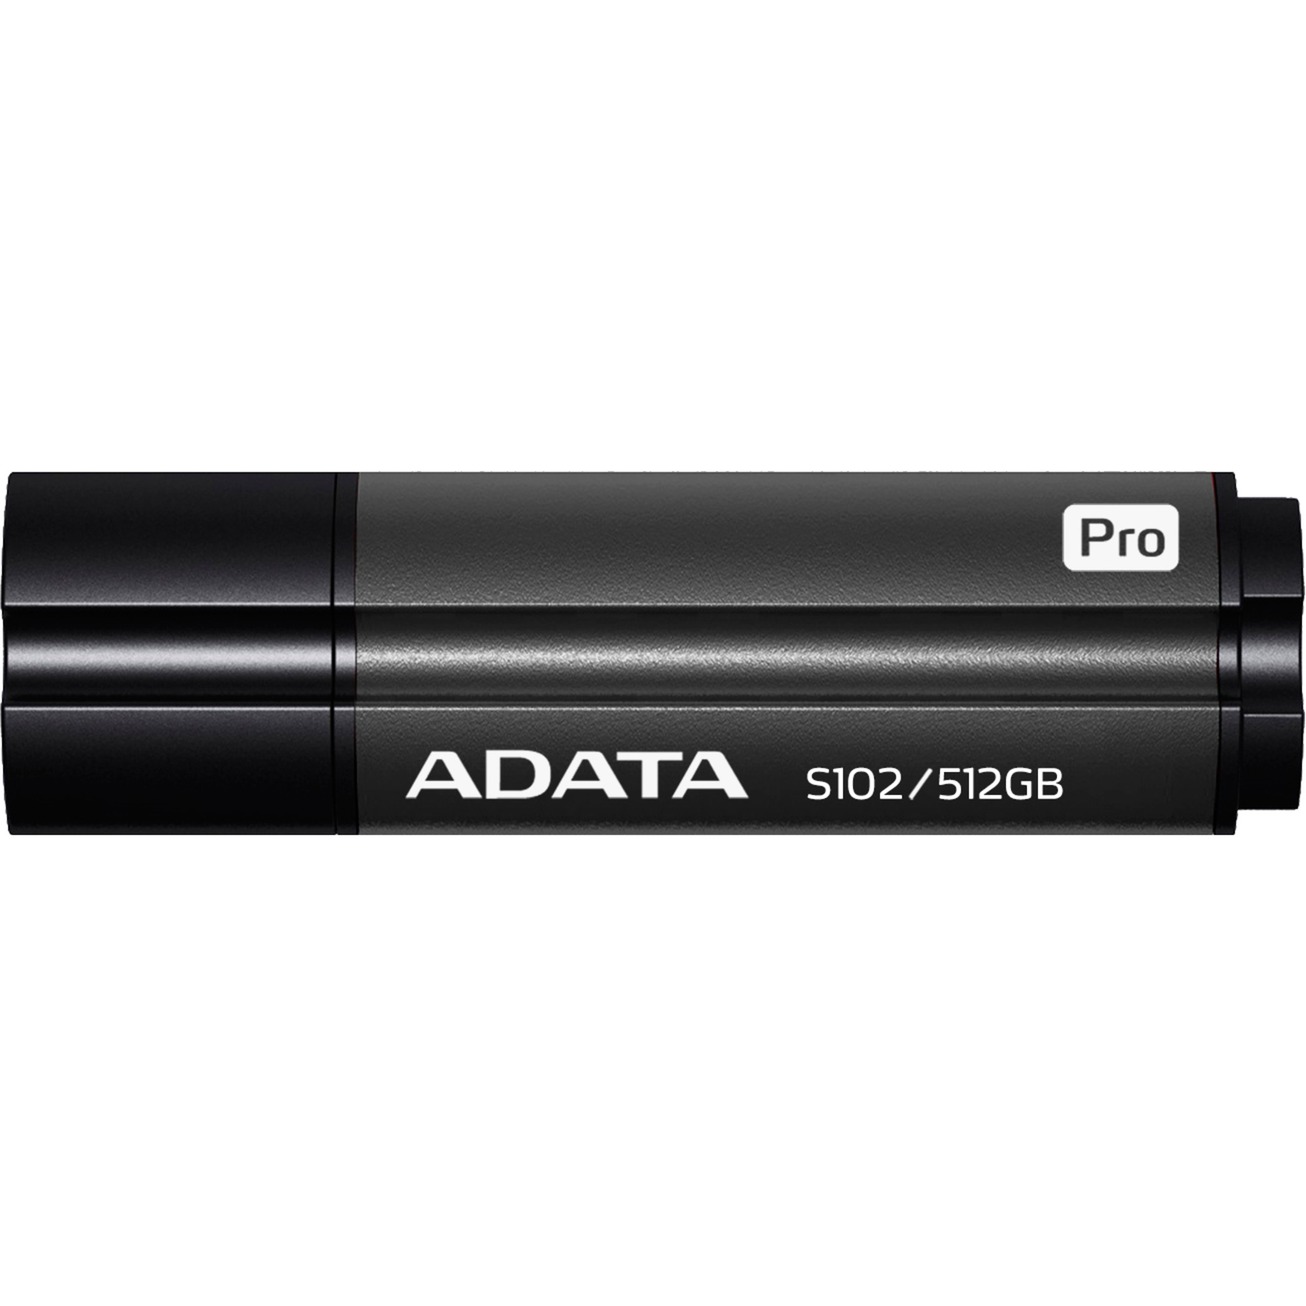 Image of Alternate - S102 Pro 512 GB, USB-Stick online einkaufen bei Alternate